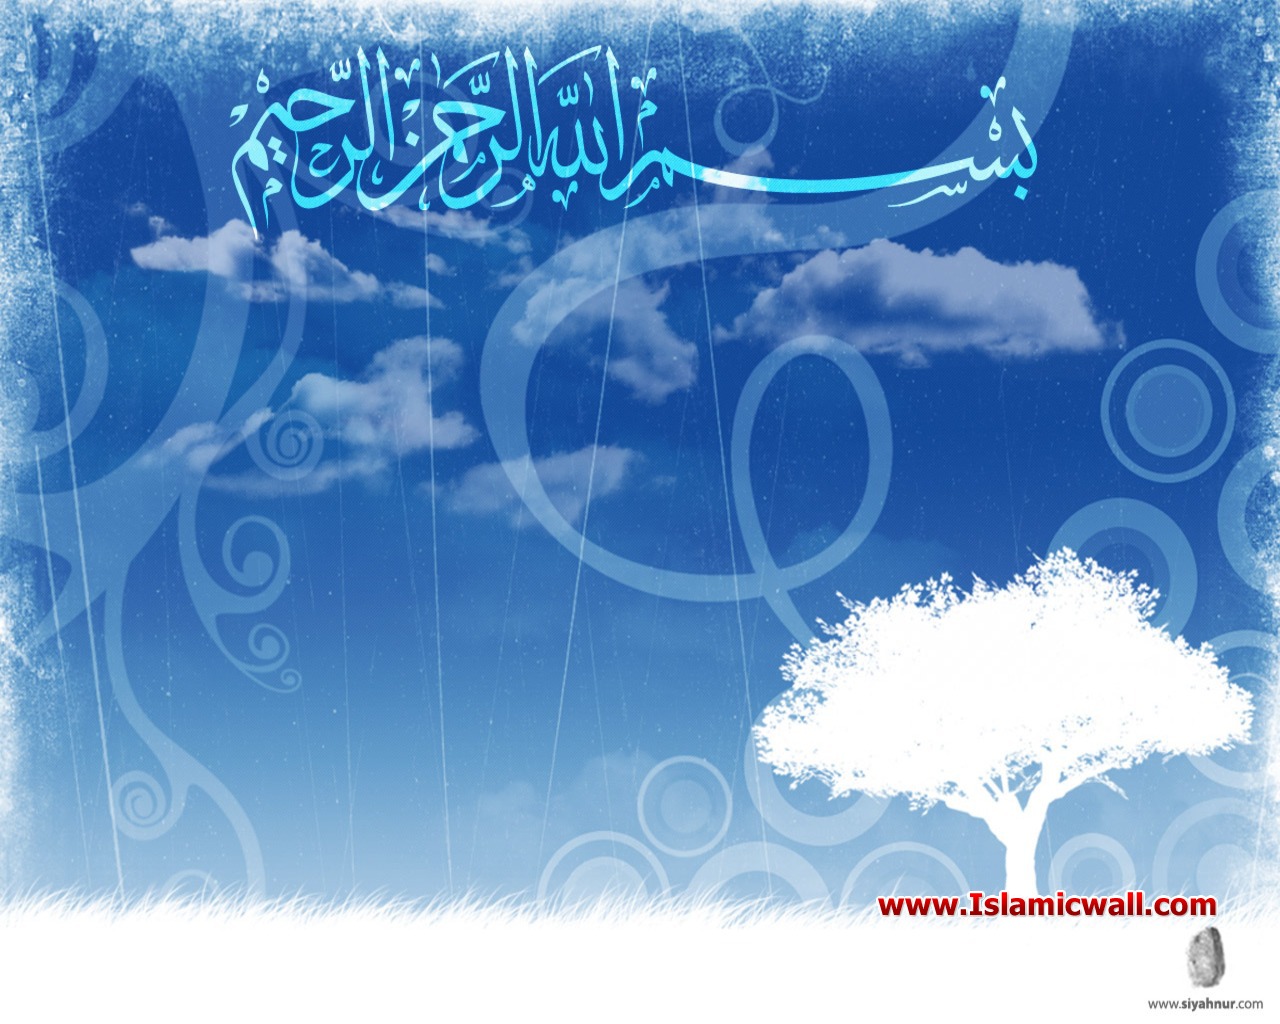 Islamic Wallpaper Facebook - Bismillah Pics In Sky Blue - HD Wallpaper 